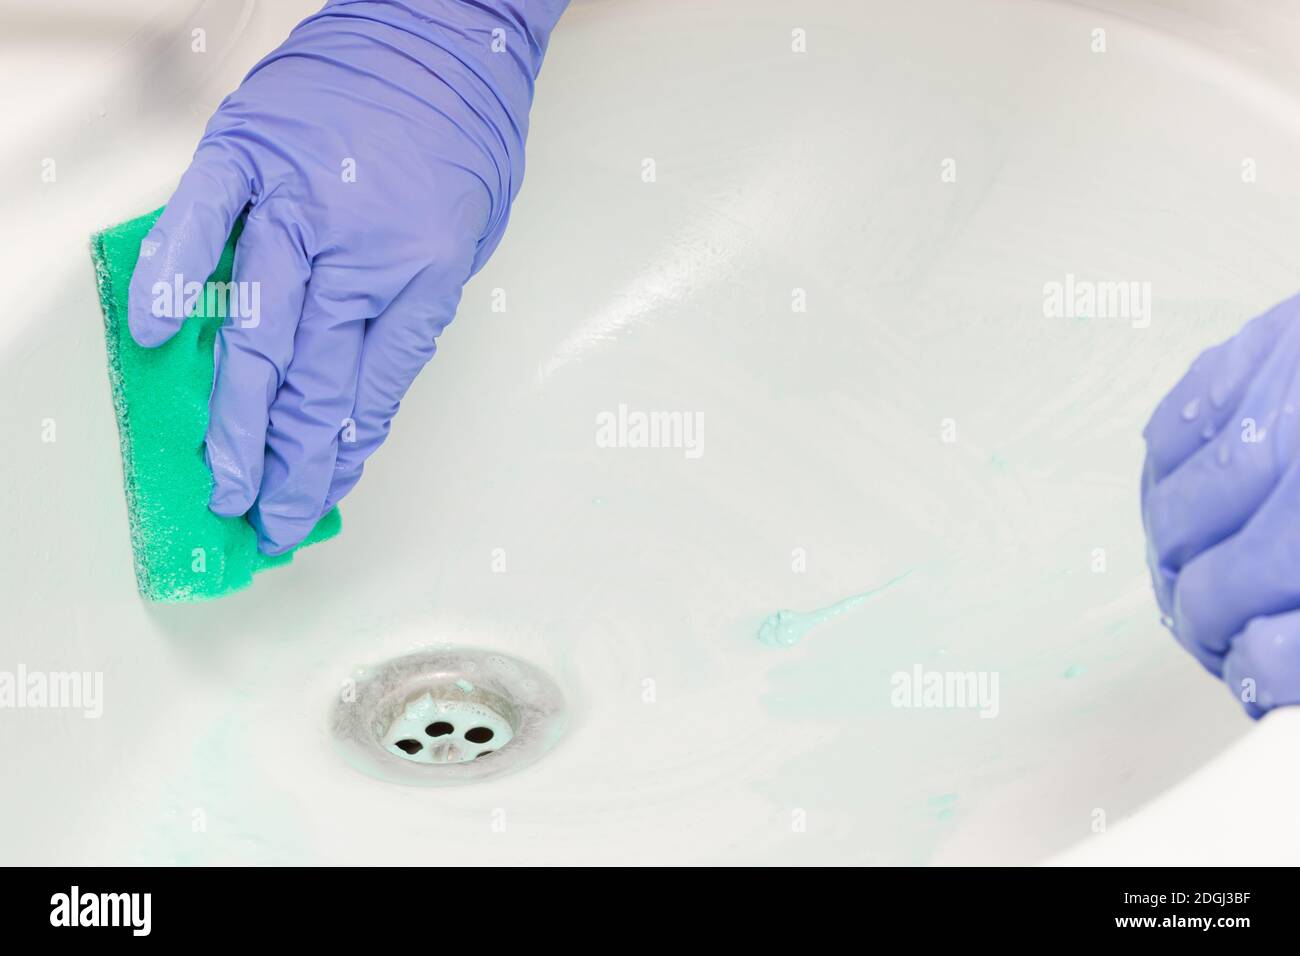 une main femelle dans un gant bleu essuie l'évier avec une éponge en mousse verte dans la salle de bains. Nettoyage de la maison Banque D'Images